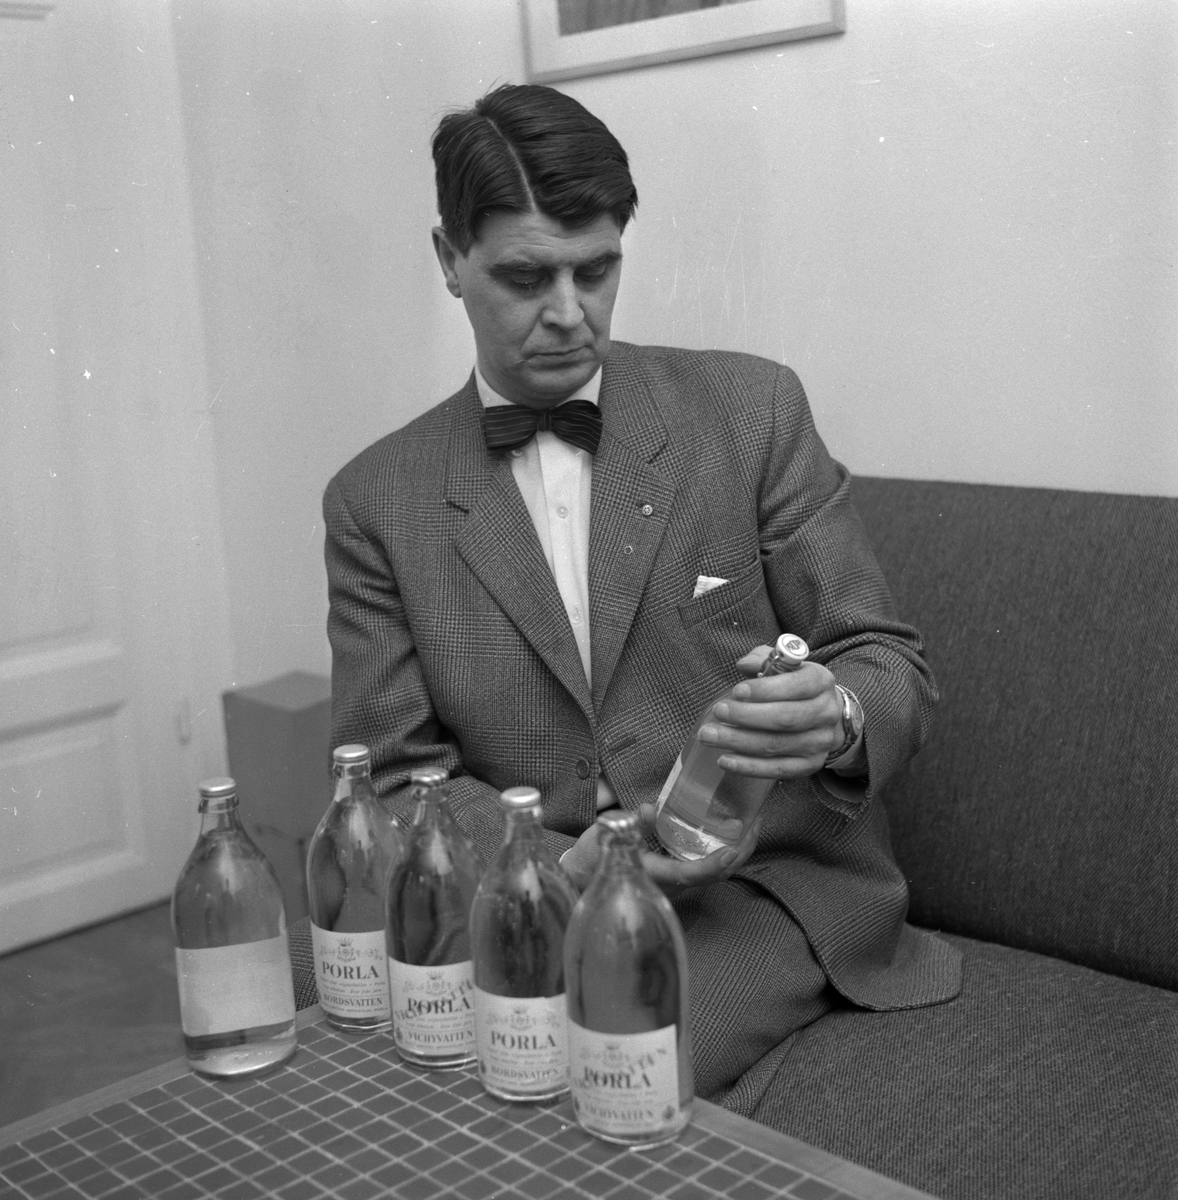 Nya sockerdricksflaskor.
24 mars 1959.